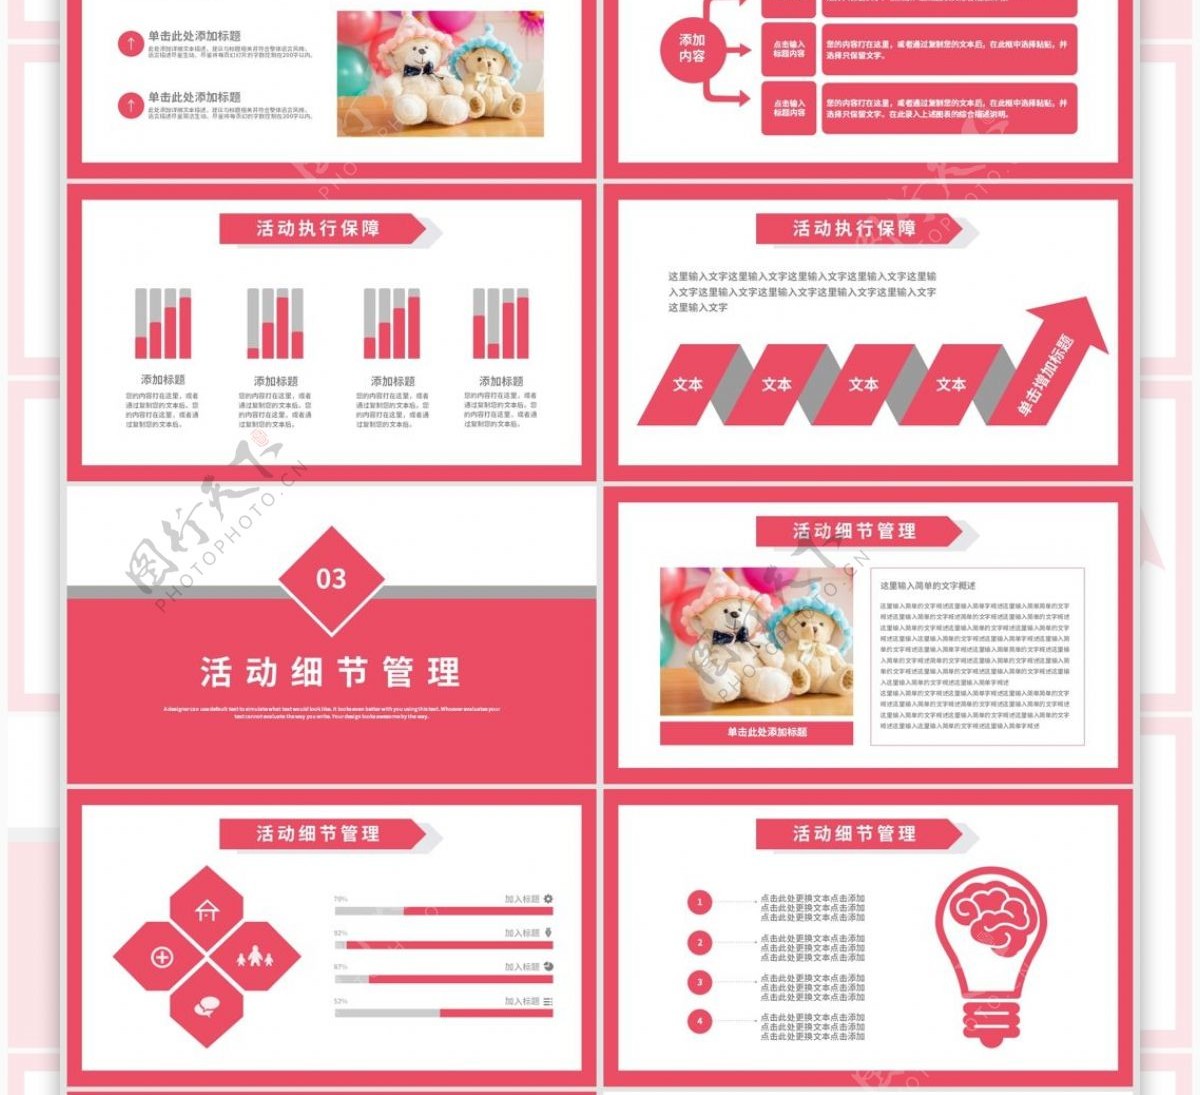 粉色简约天猫国际玩具节营销策划PPT模板